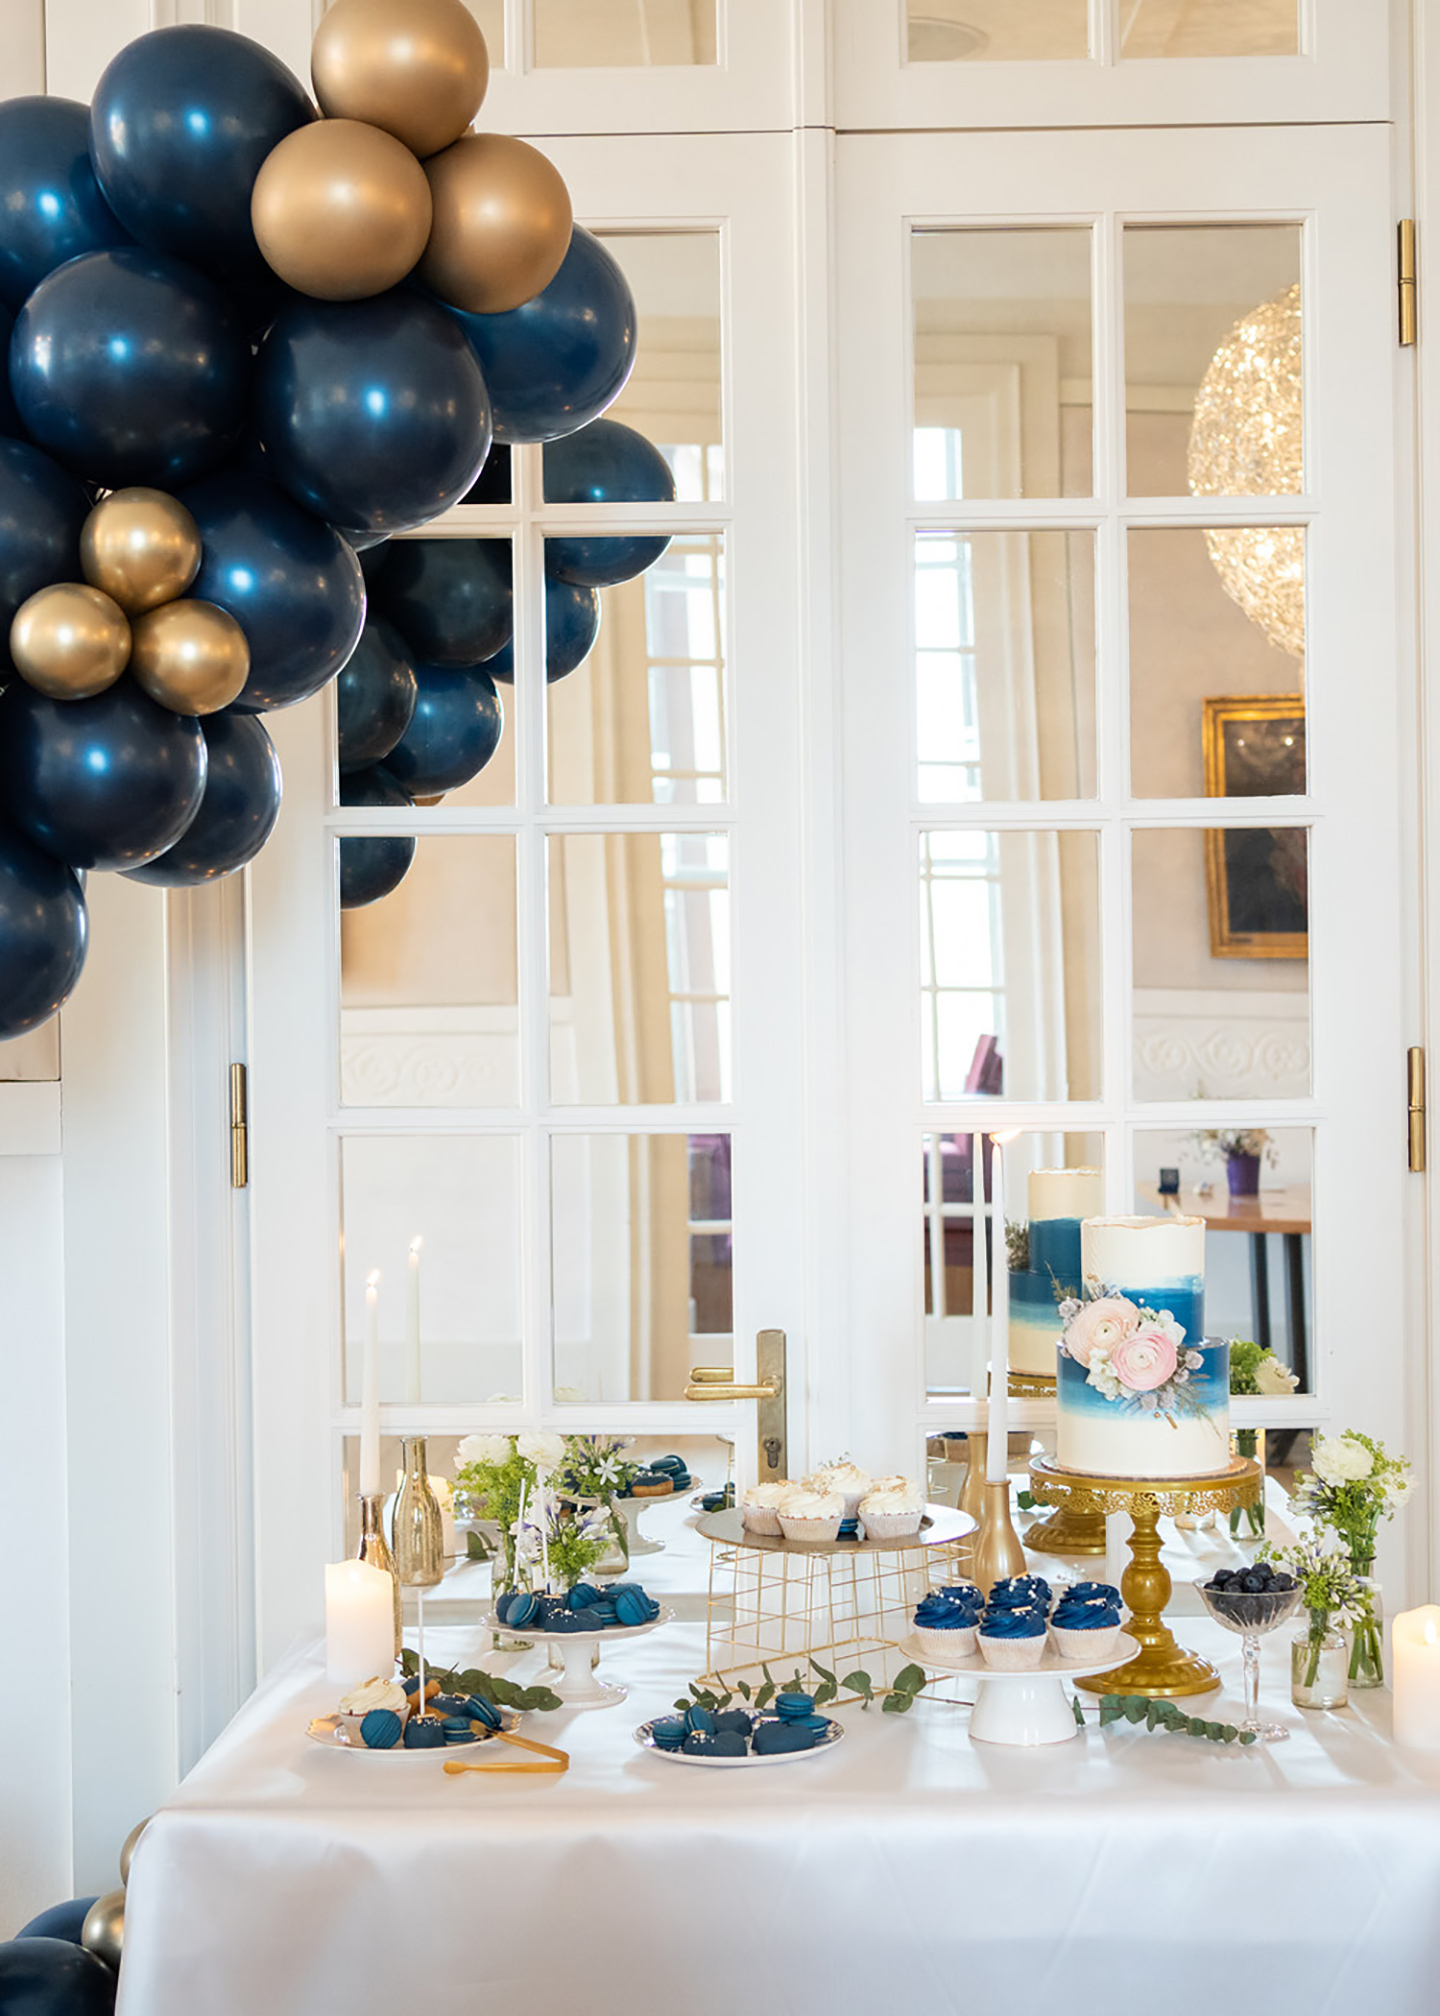 Die Hochzeitslocation von innen wurde dezent geschmückt, mit blauen Ballons und goldenen Elementen. Der Tisch, auf dem Ein Buffet aus der Hochzeitstorte und weiteren süßen Gebäckspeisen, besteht, ist auf einem extra Tisch angerichtet.